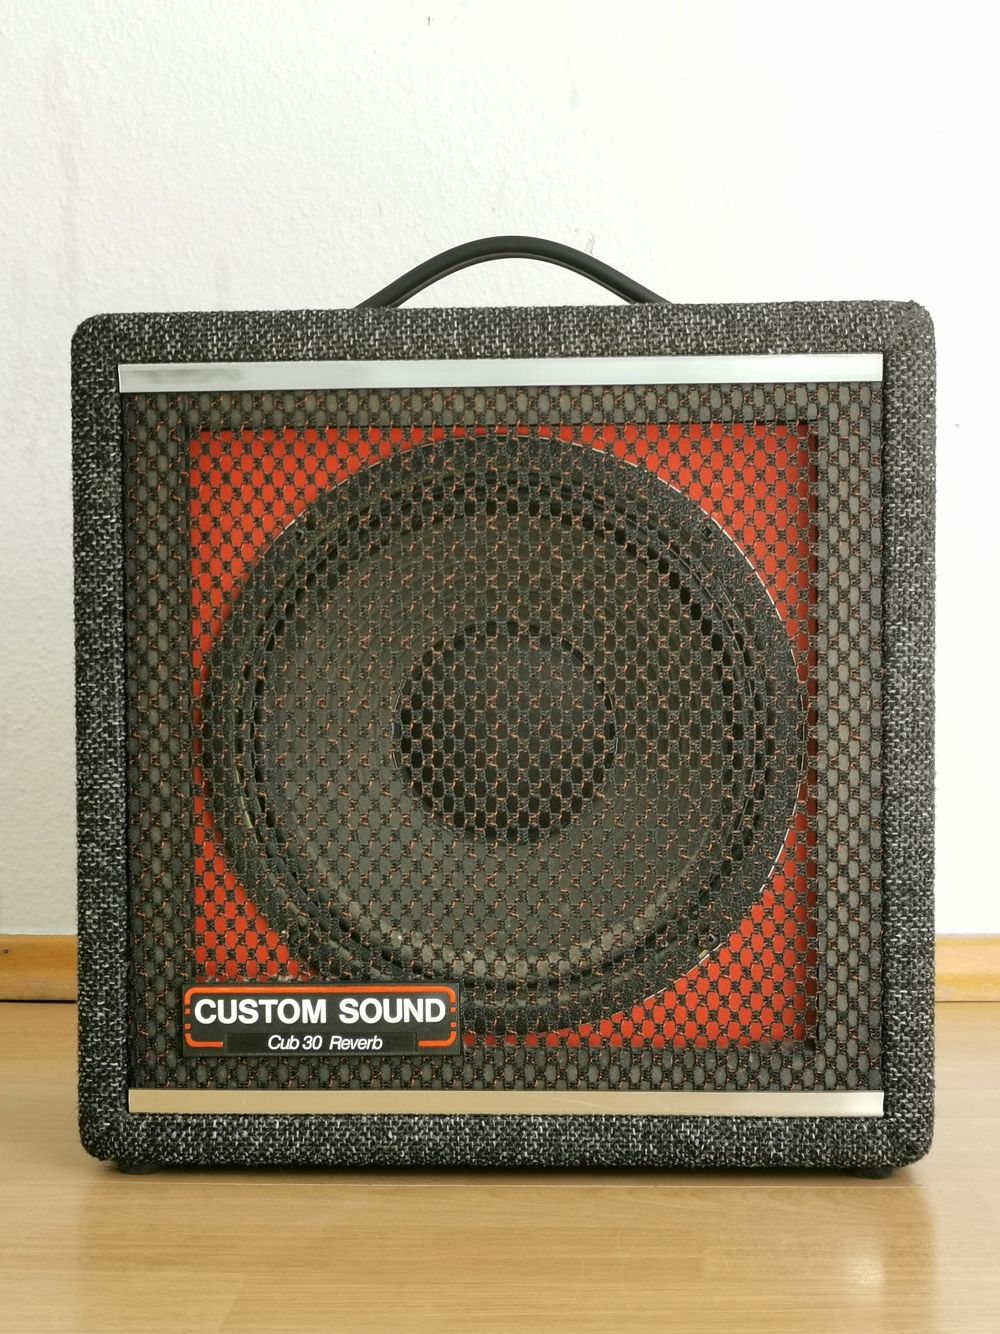 Custom Sound  Gitarren-Verstärker aus den 80ziger Jahren  Made in England  Vintage